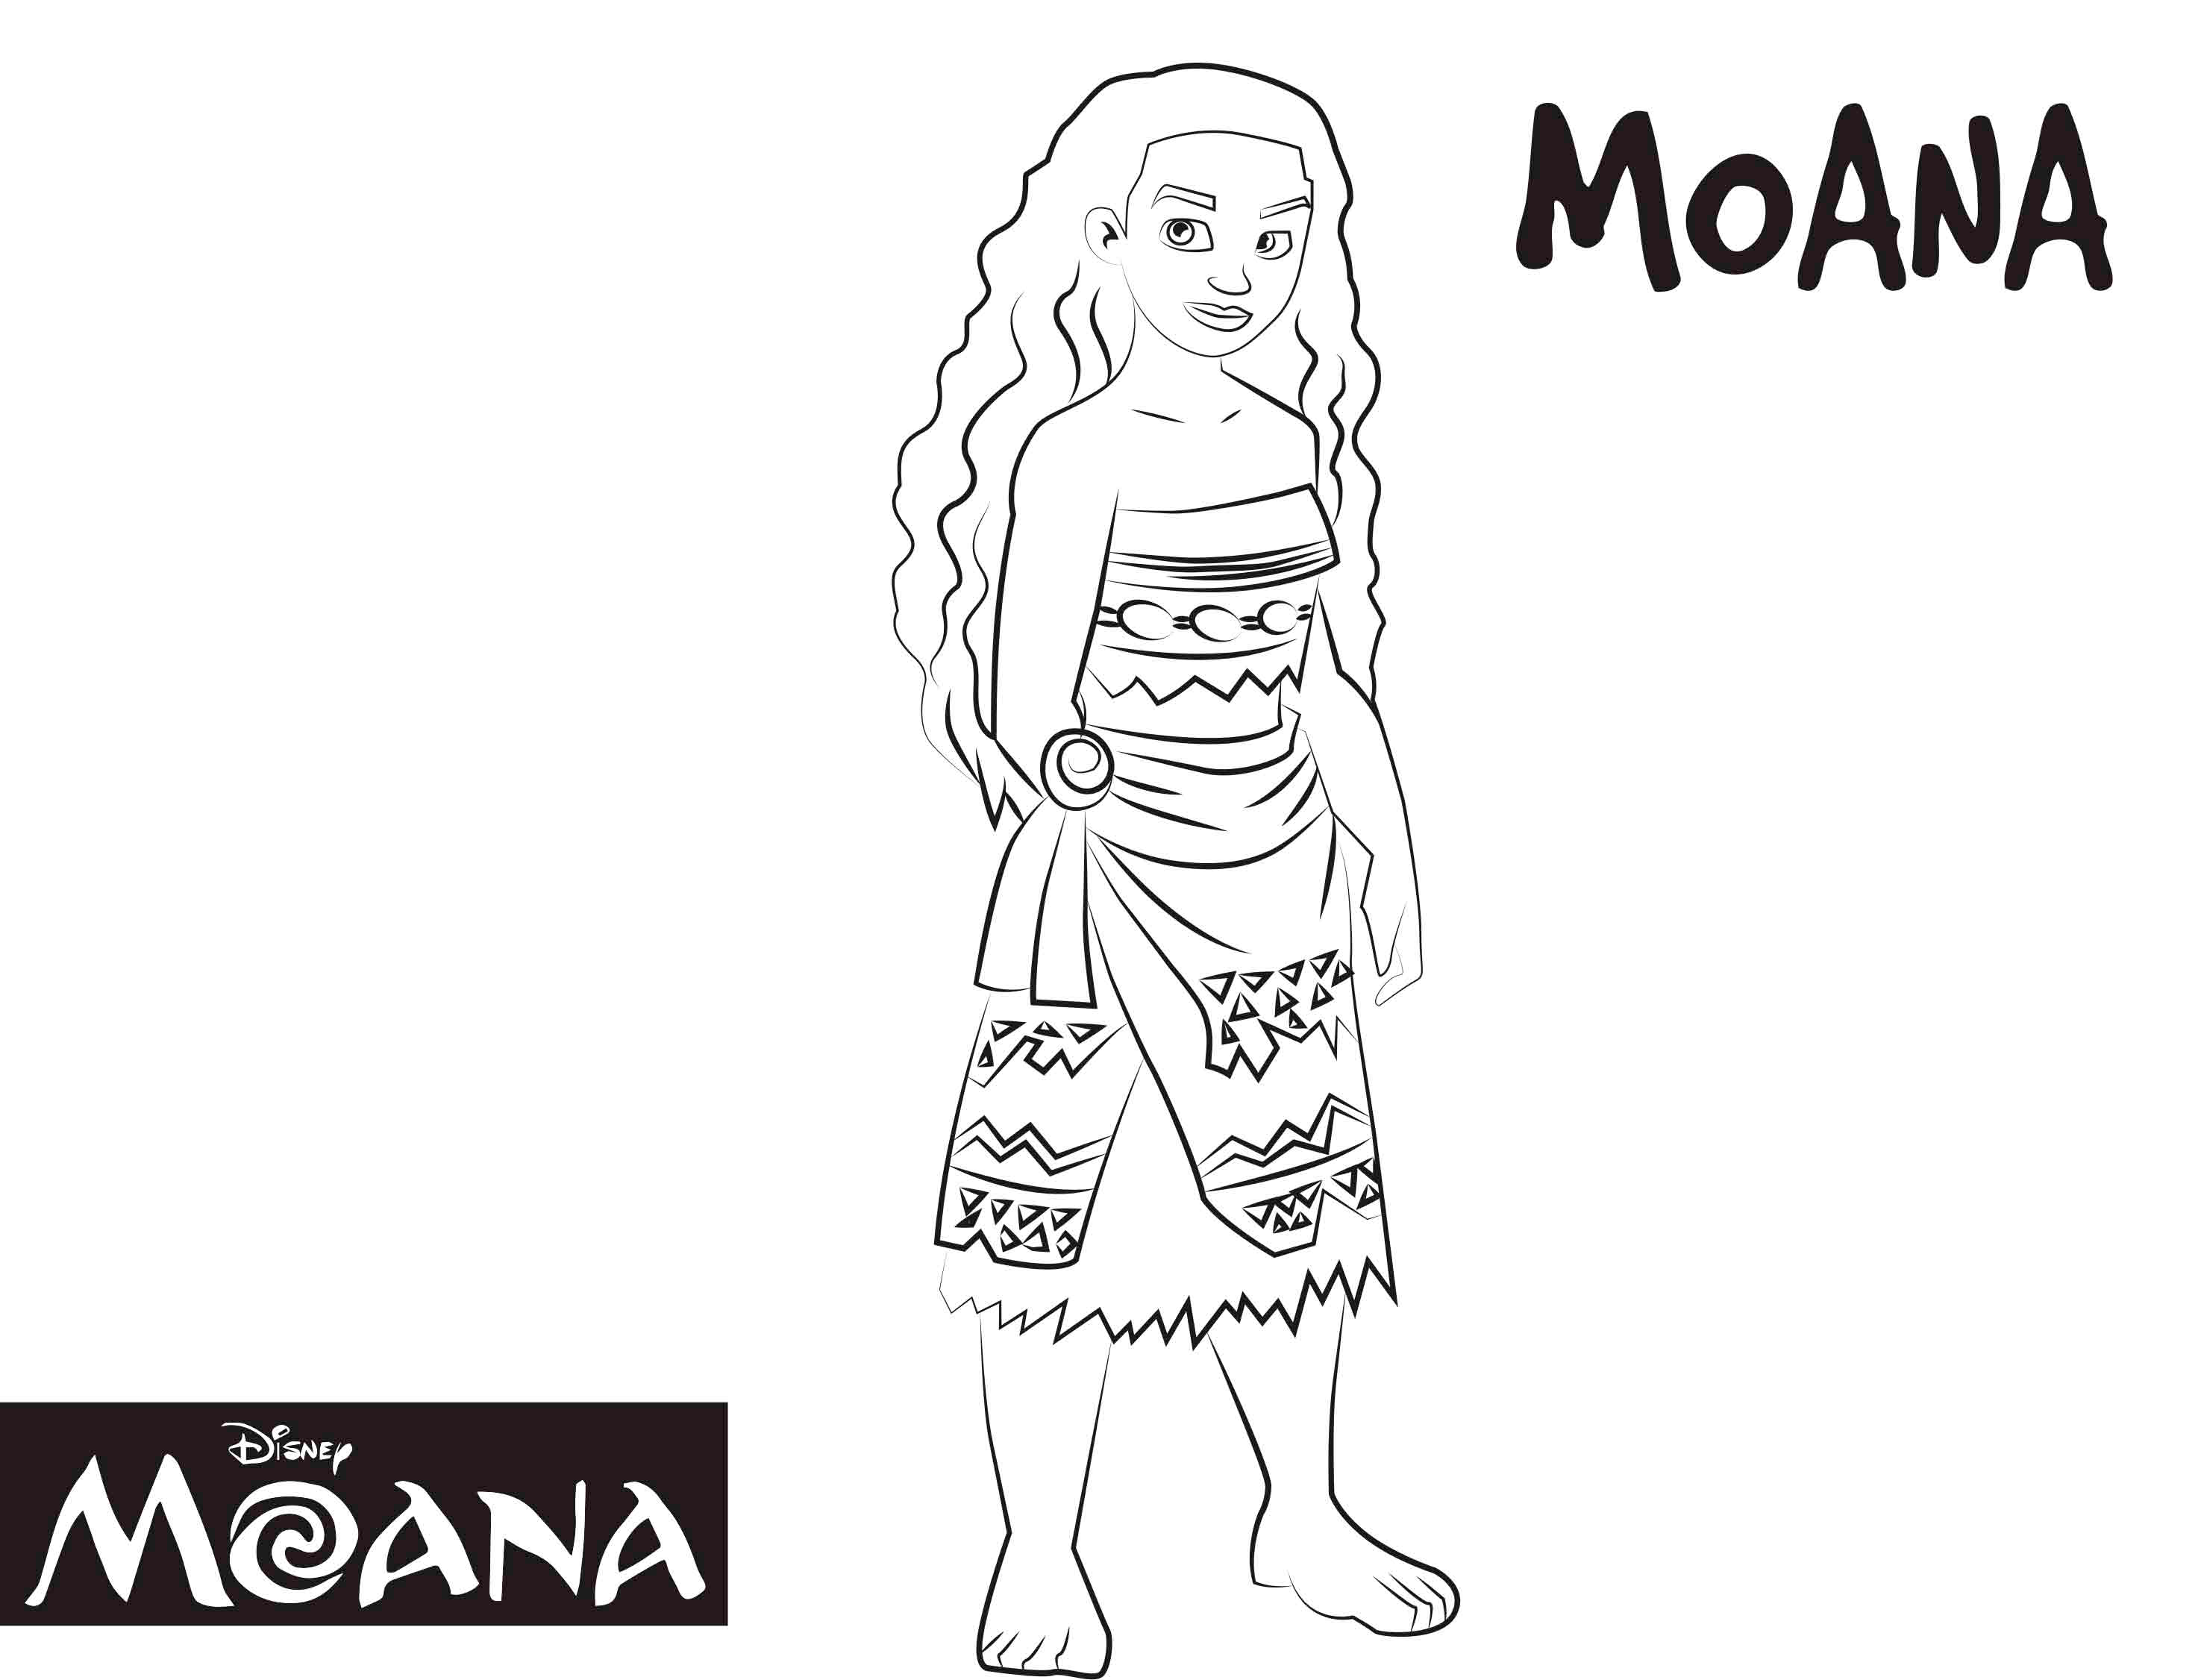 Dibujo para colorear de Moana, el personaje de la película de dibujos de Disney Moana la princesa de la Polinesia de la película de dibujos de Disney